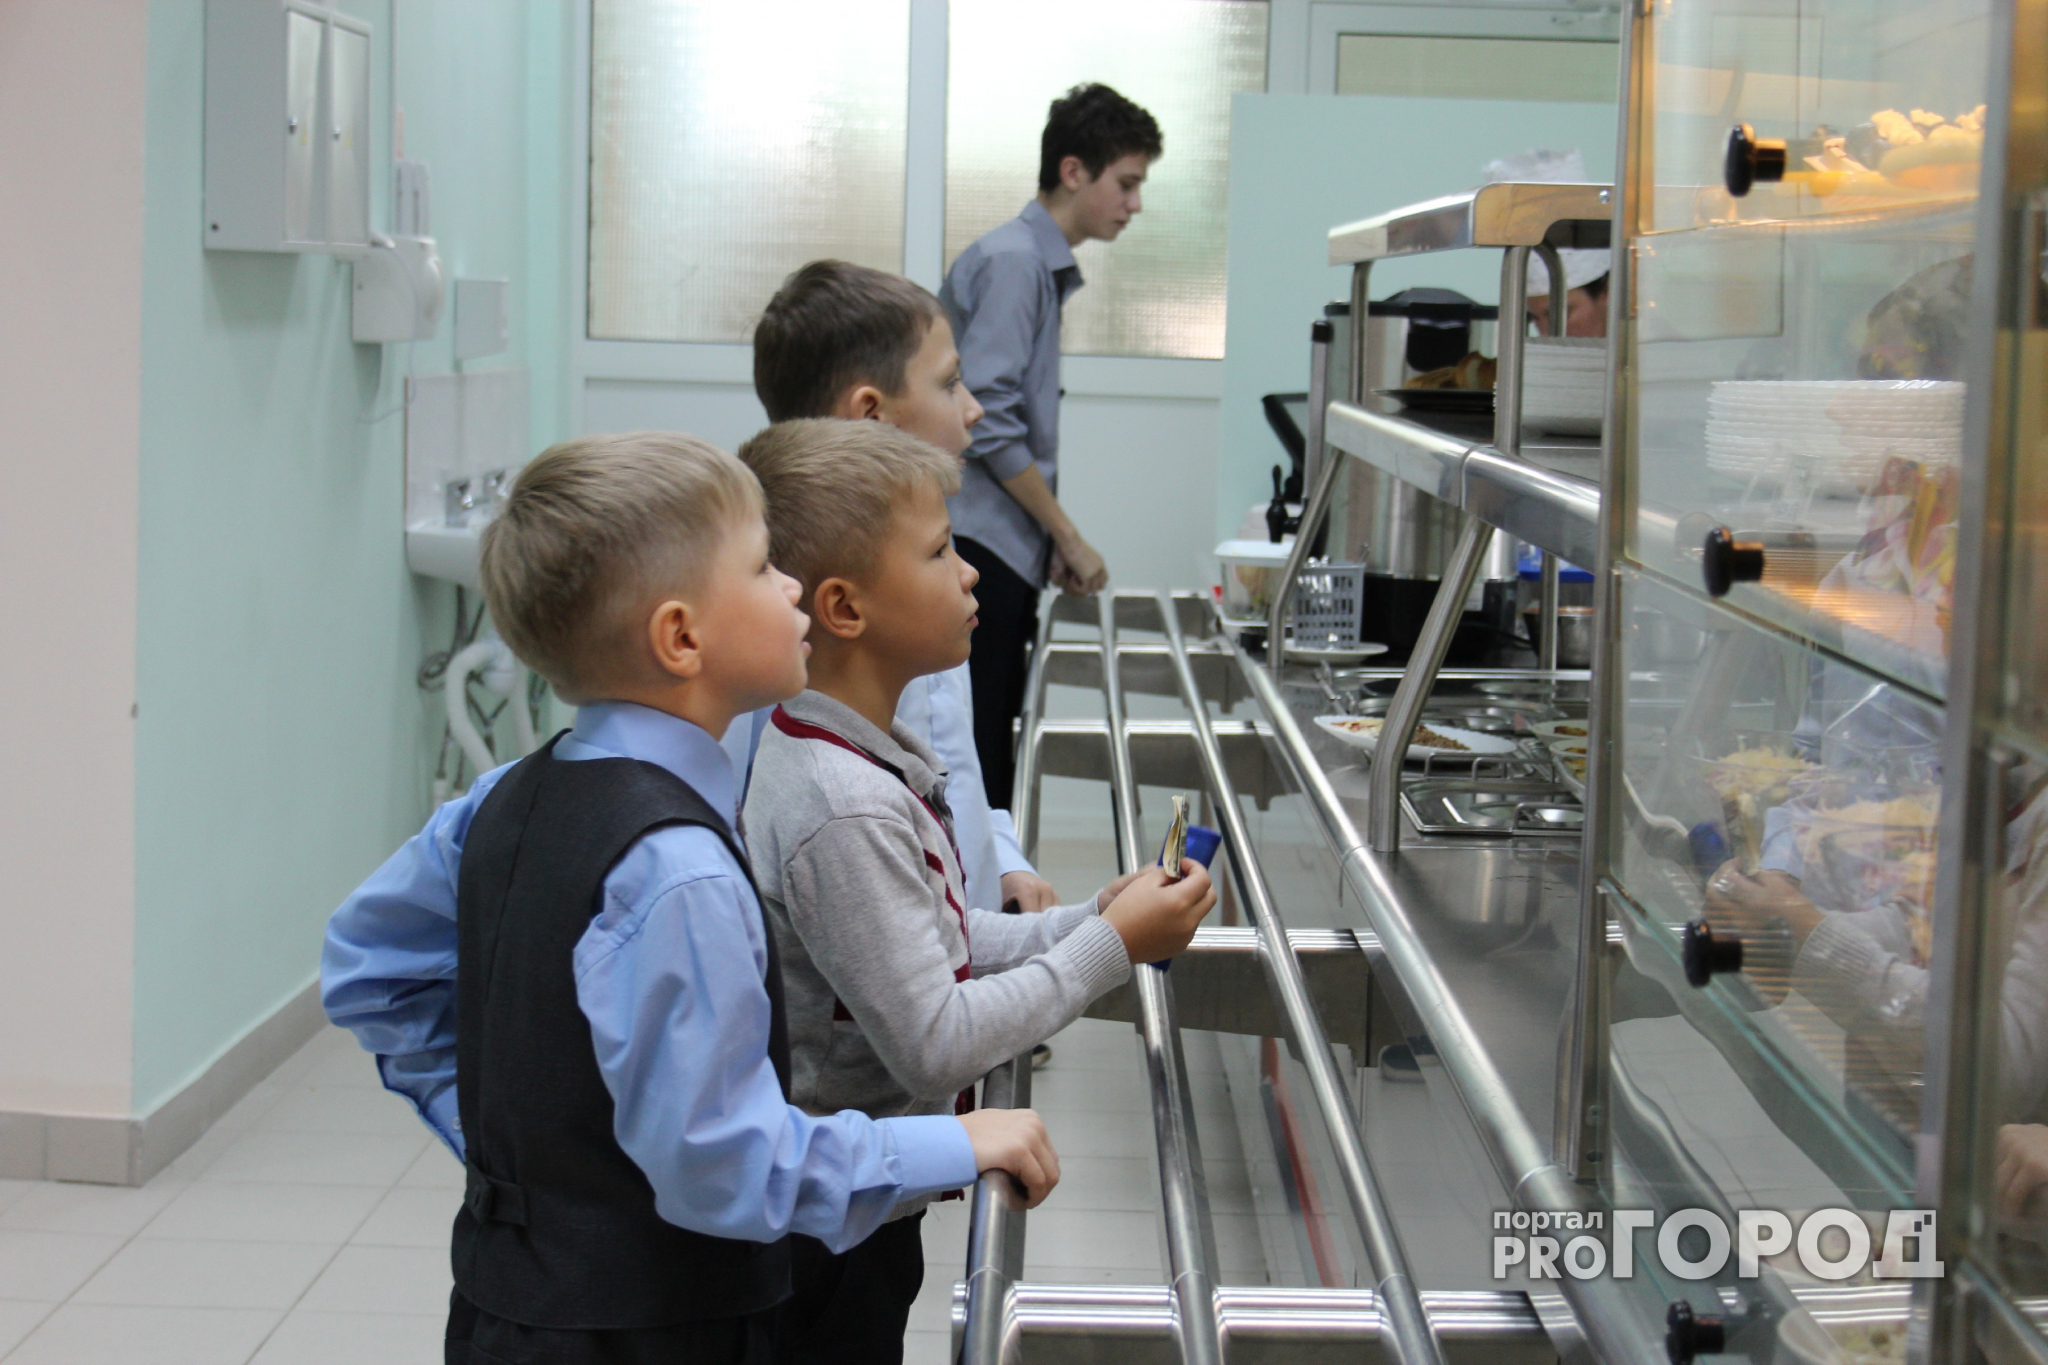 Прокуратура Нижнего Новгорода нашла нарушения в организации школьного питания